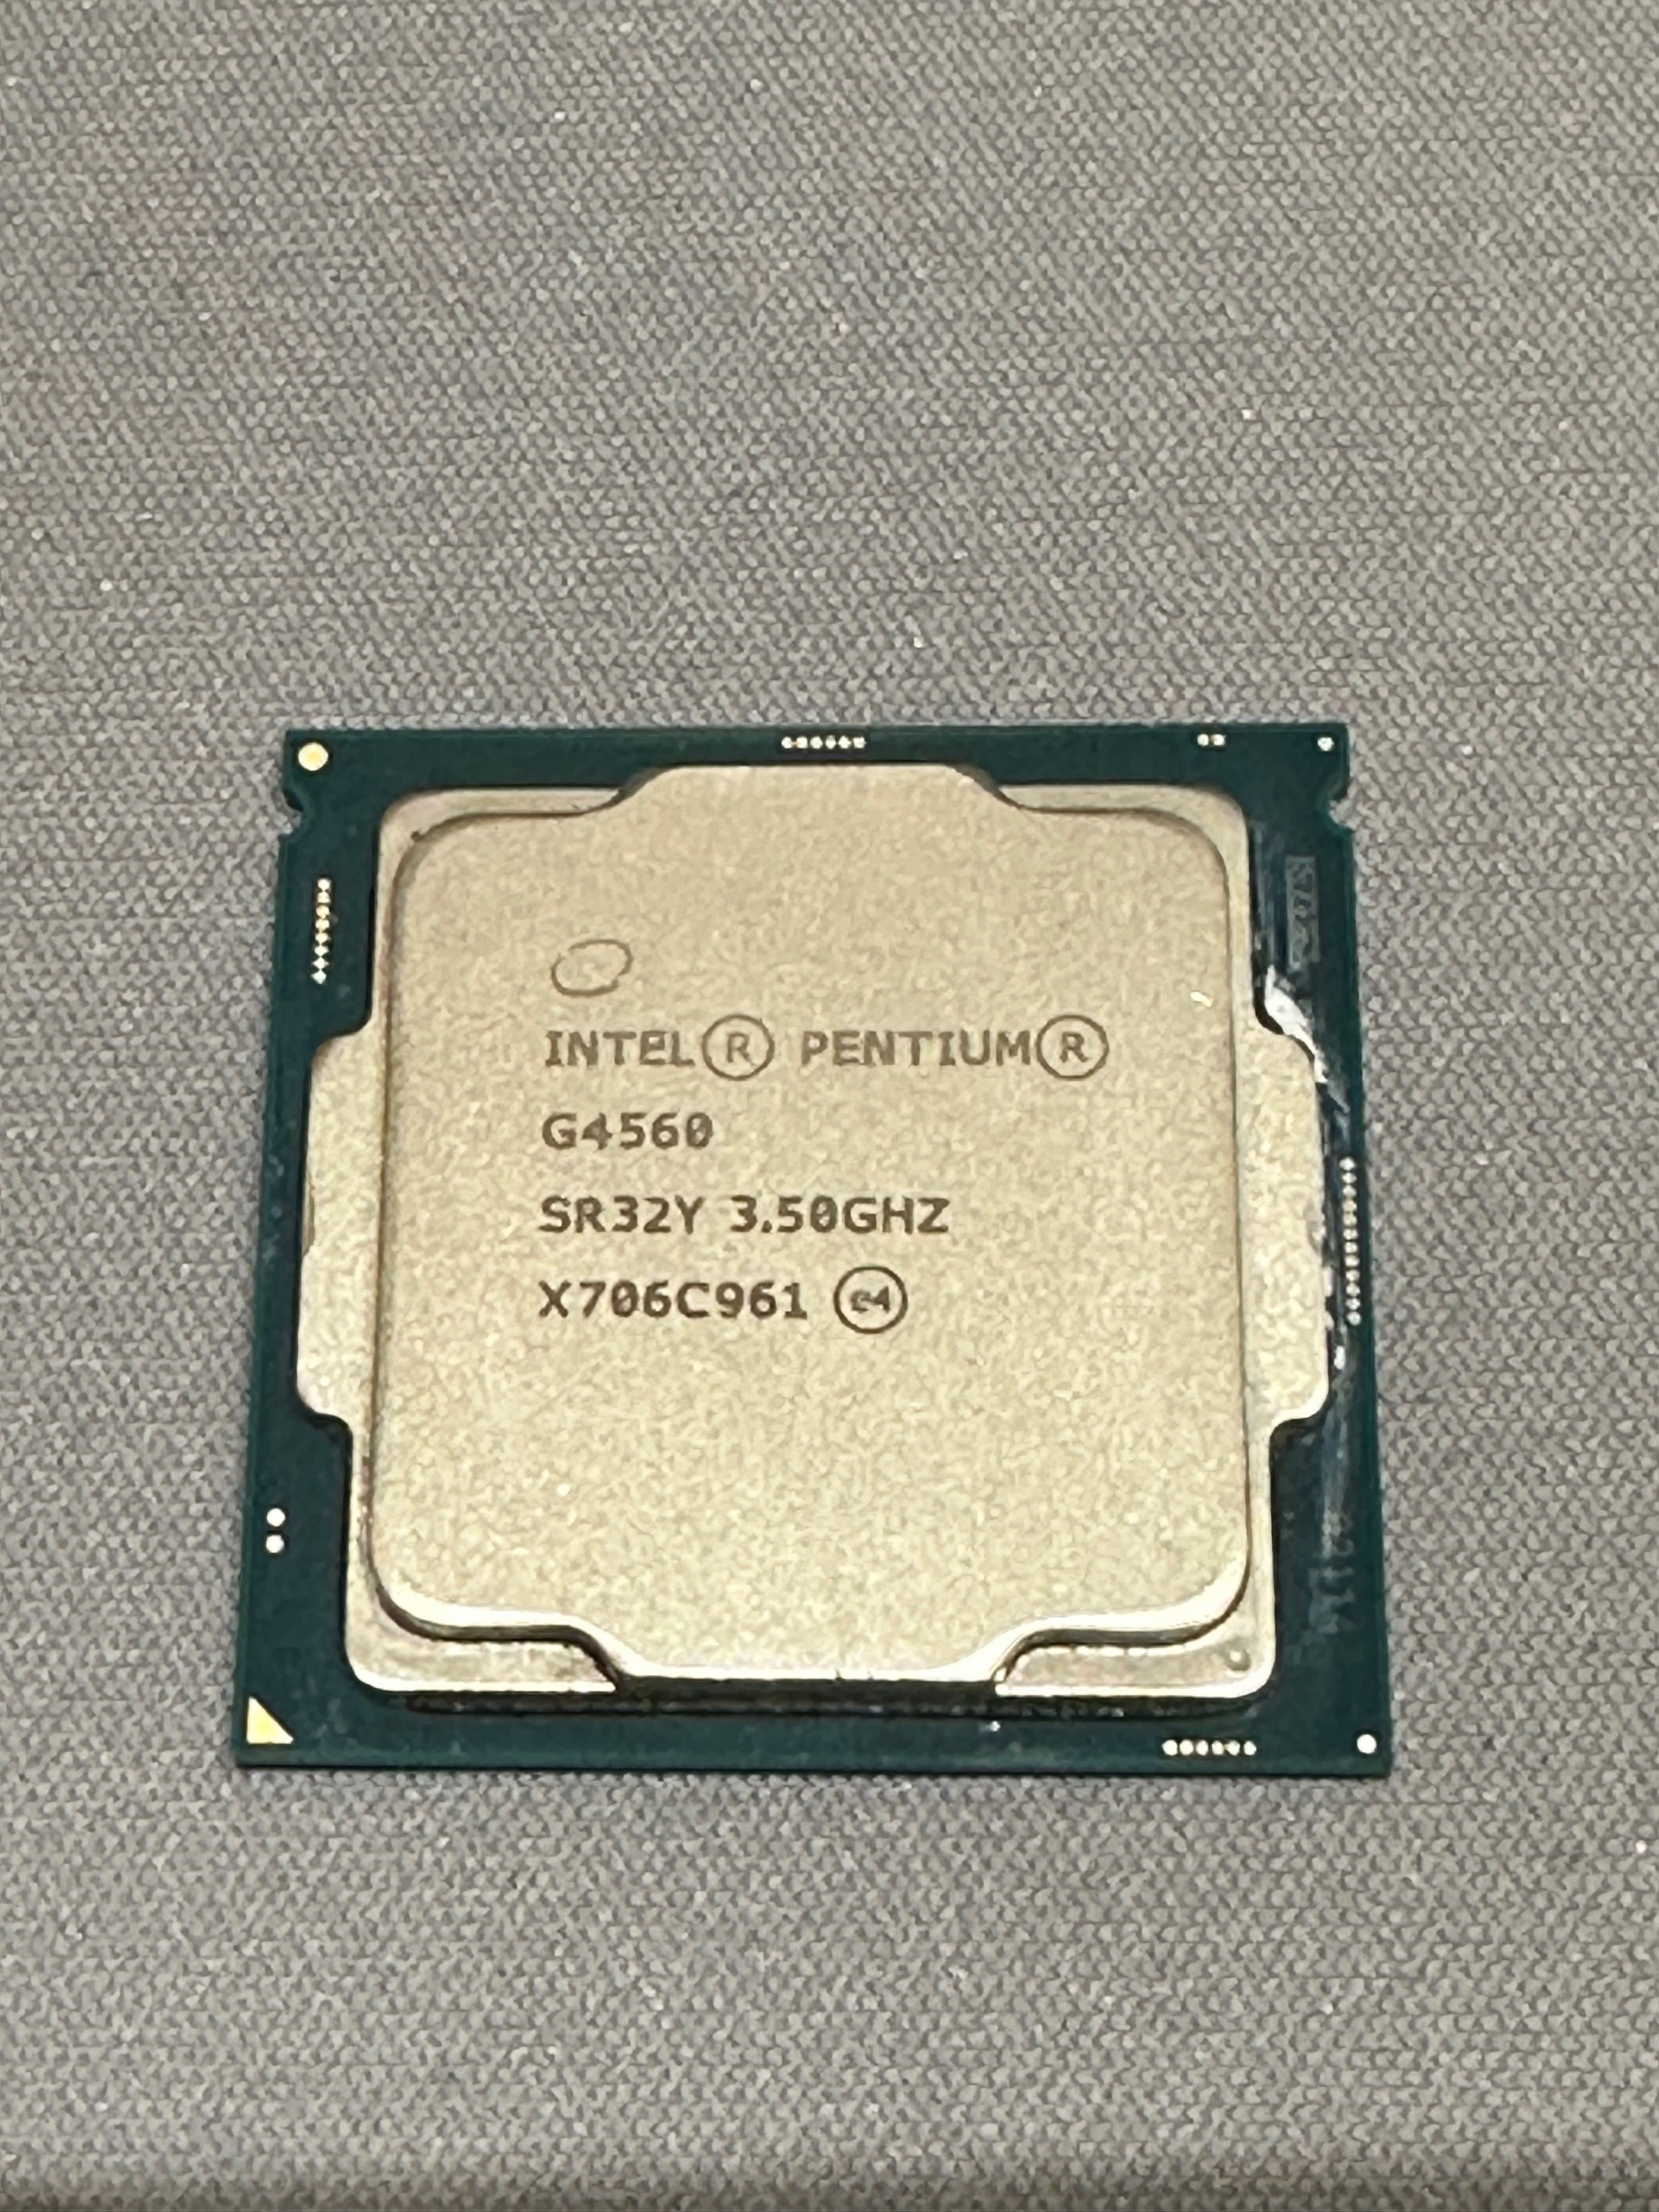 Intel pentium g4560 3.50GHZ